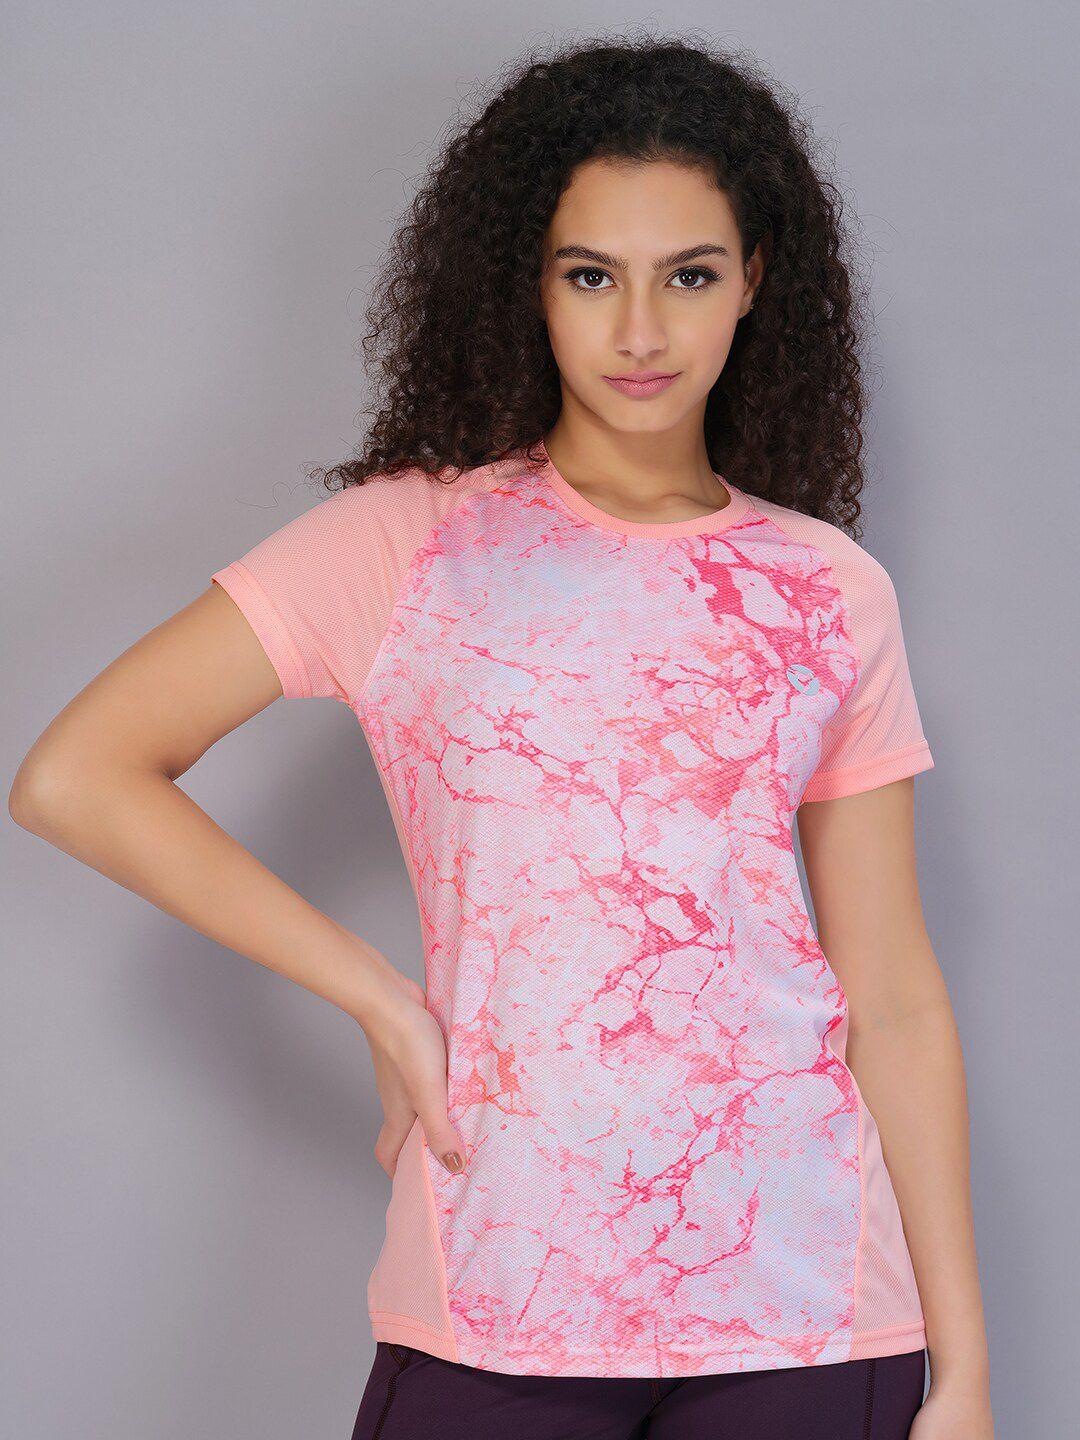 technosport women peach-coloured printed antimicrobial t-shirt